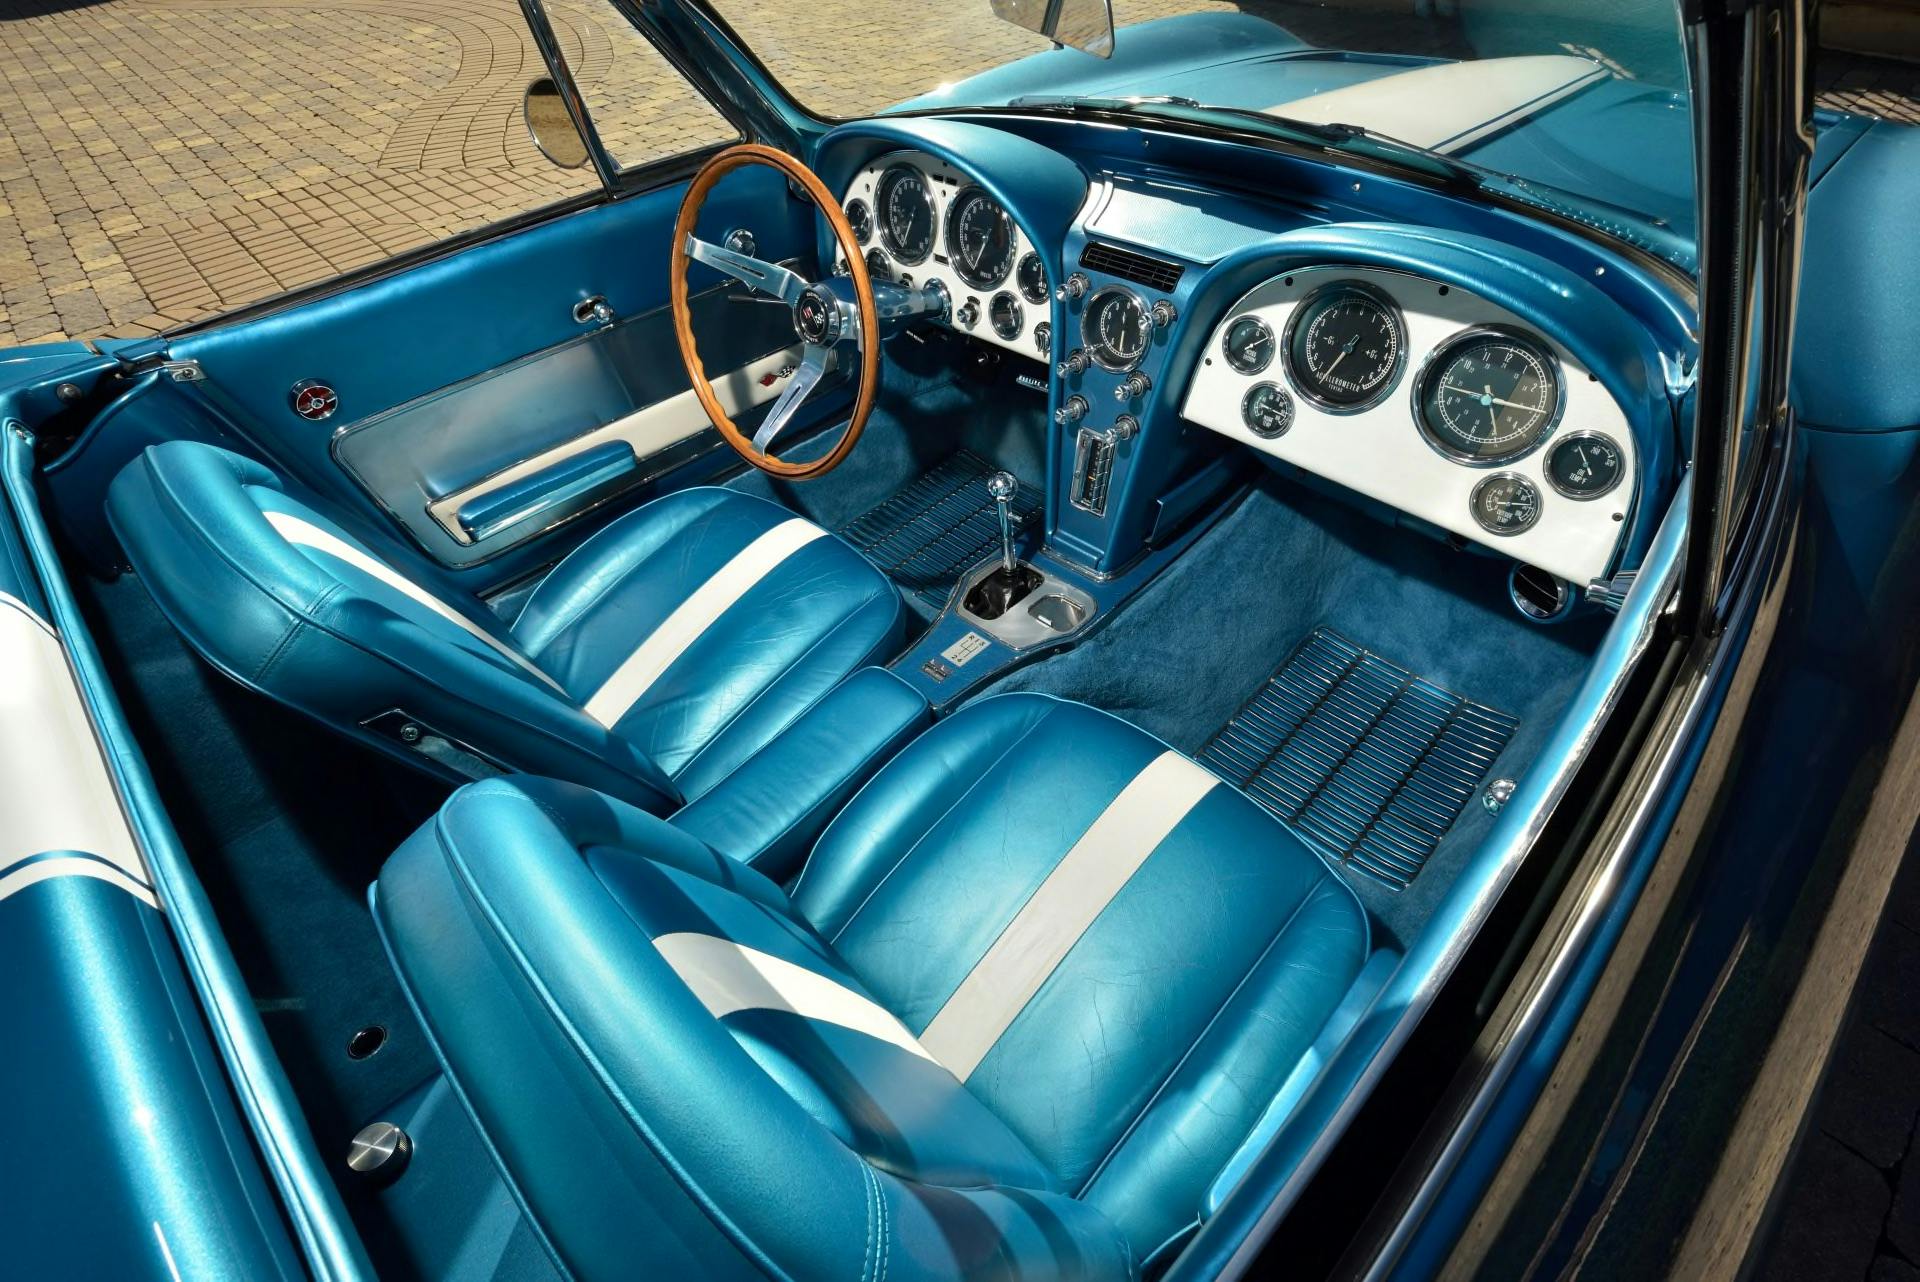 1963 Chevrolet Corvette Harley Earl Styling Car interior